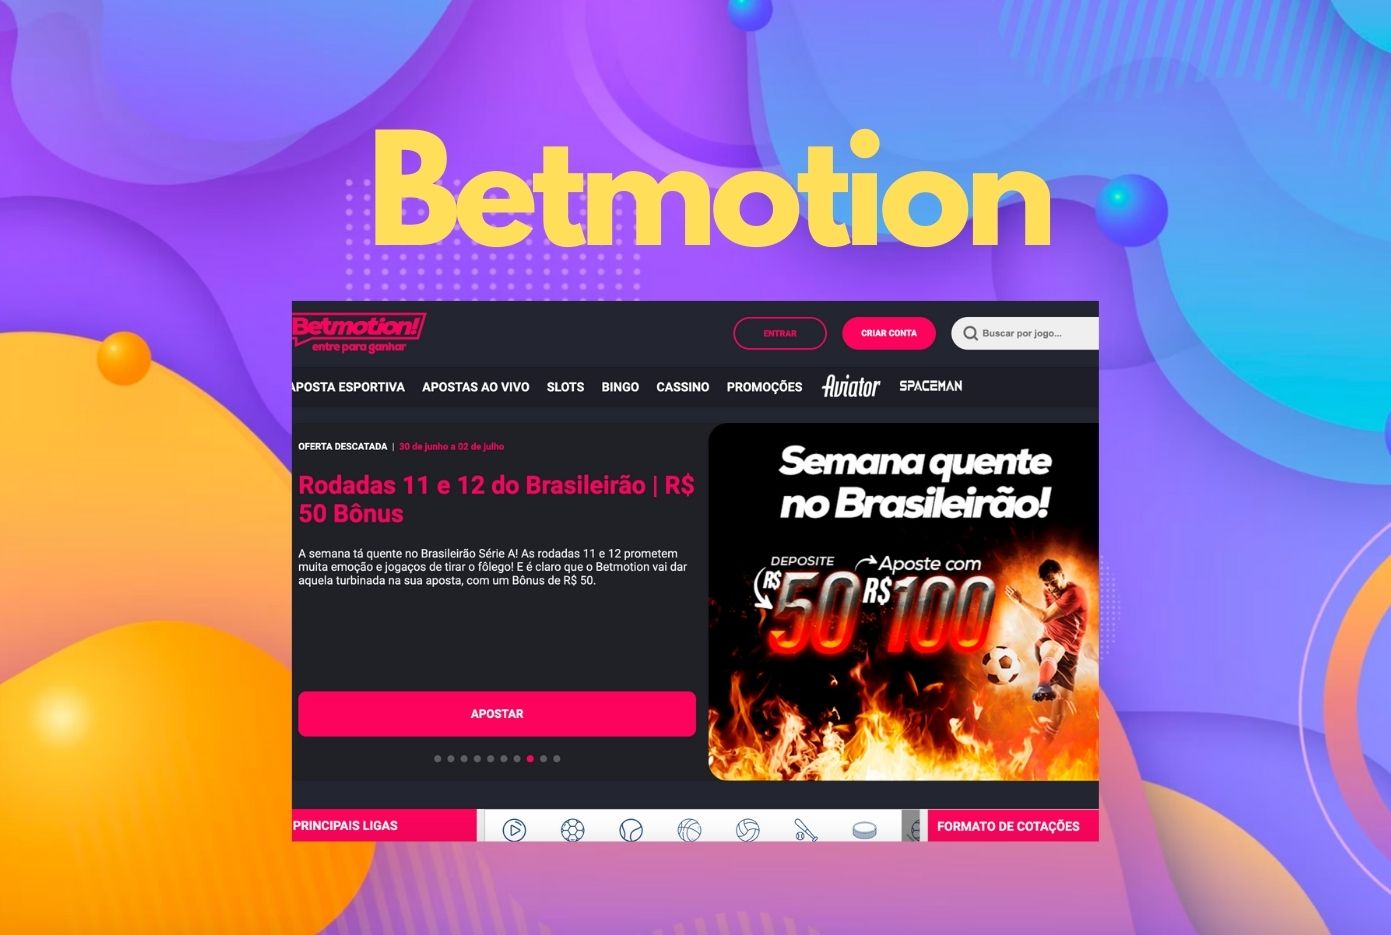 Avaliação do site de apostas on-line Betmotion no Brasil